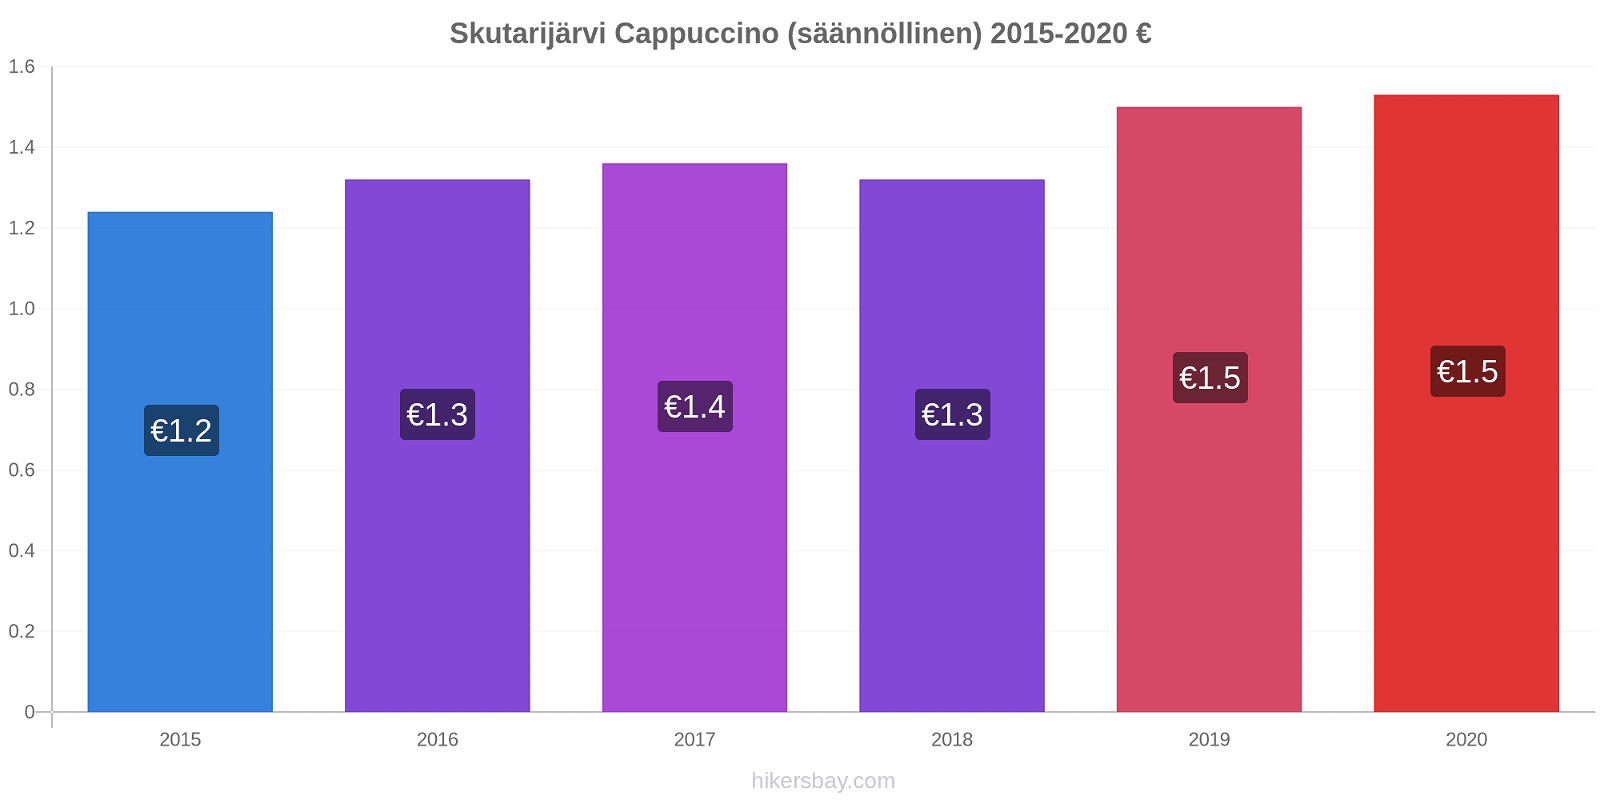 Skutarijärvi hintojen muutokset Cappuccino (säännöllinen) hikersbay.com